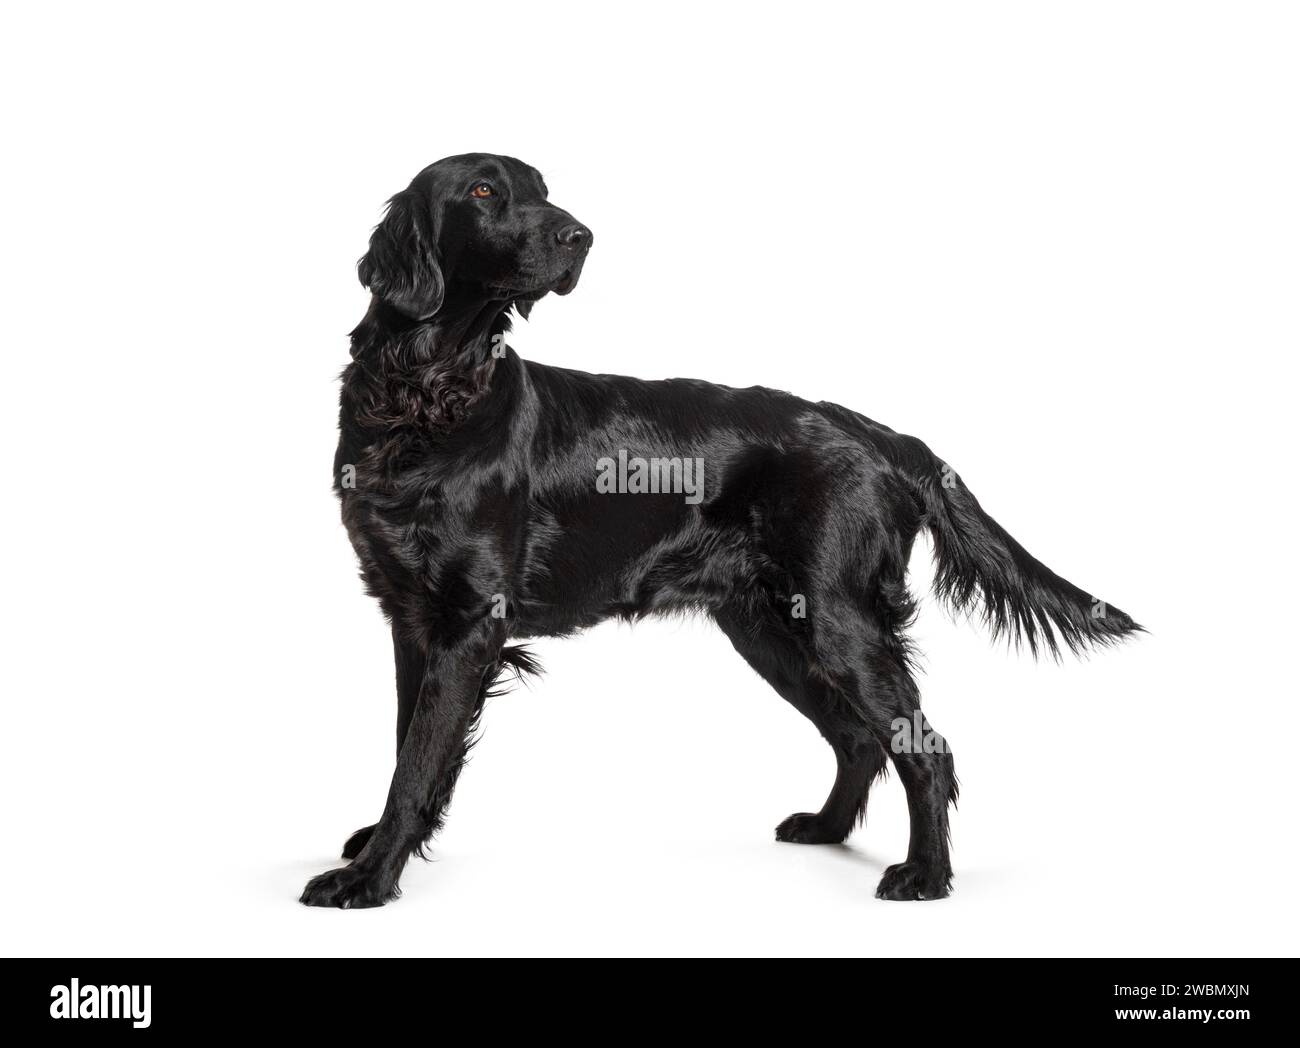 Vue latérale d'un chien noir Flatcoat Retriever debout et regardant en arrière, isolé sur blanc Banque D'Images